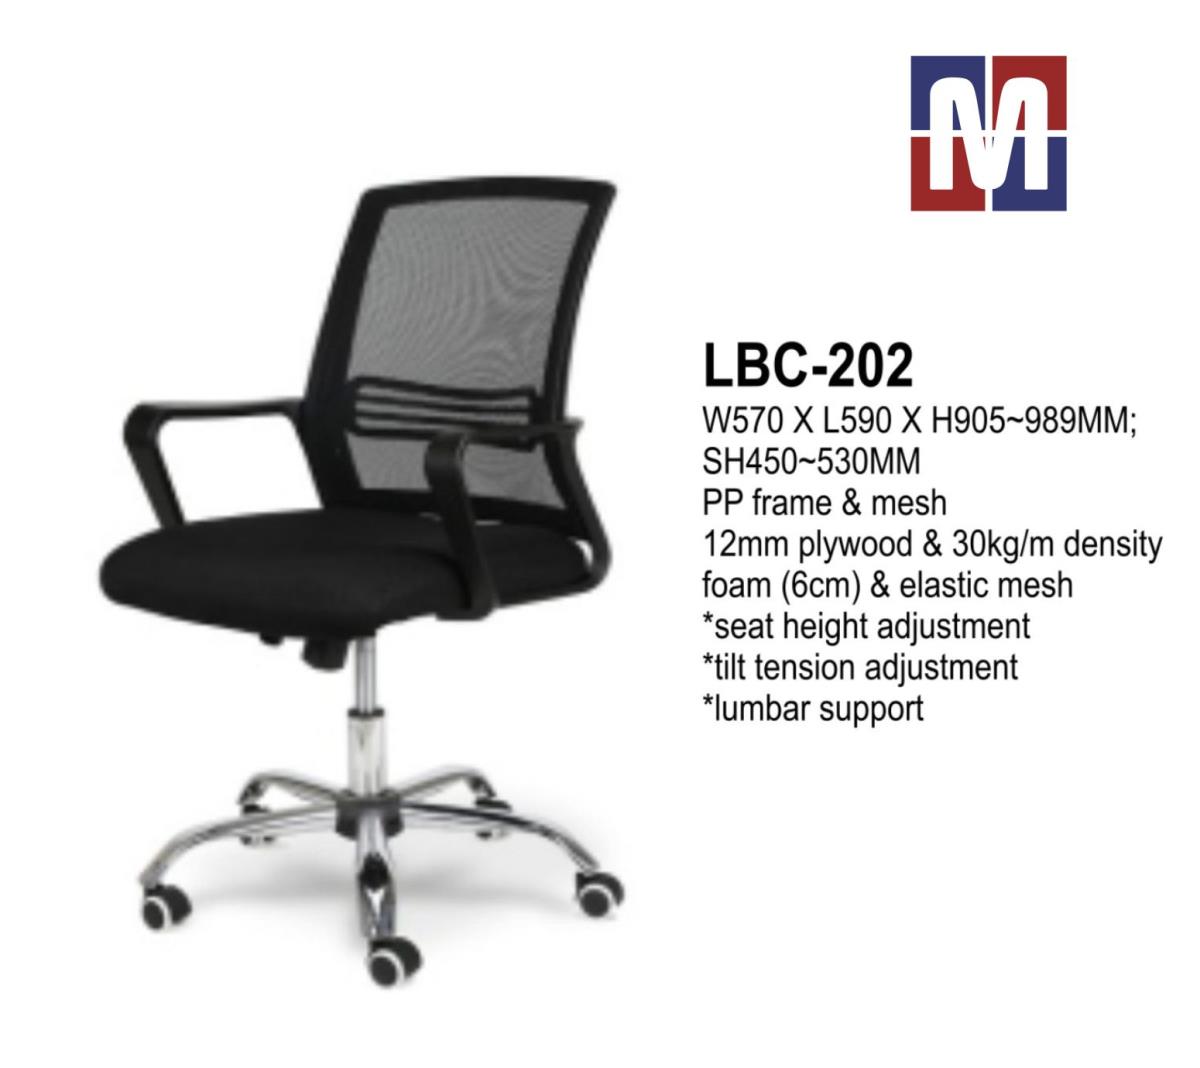 Product: LBC-202